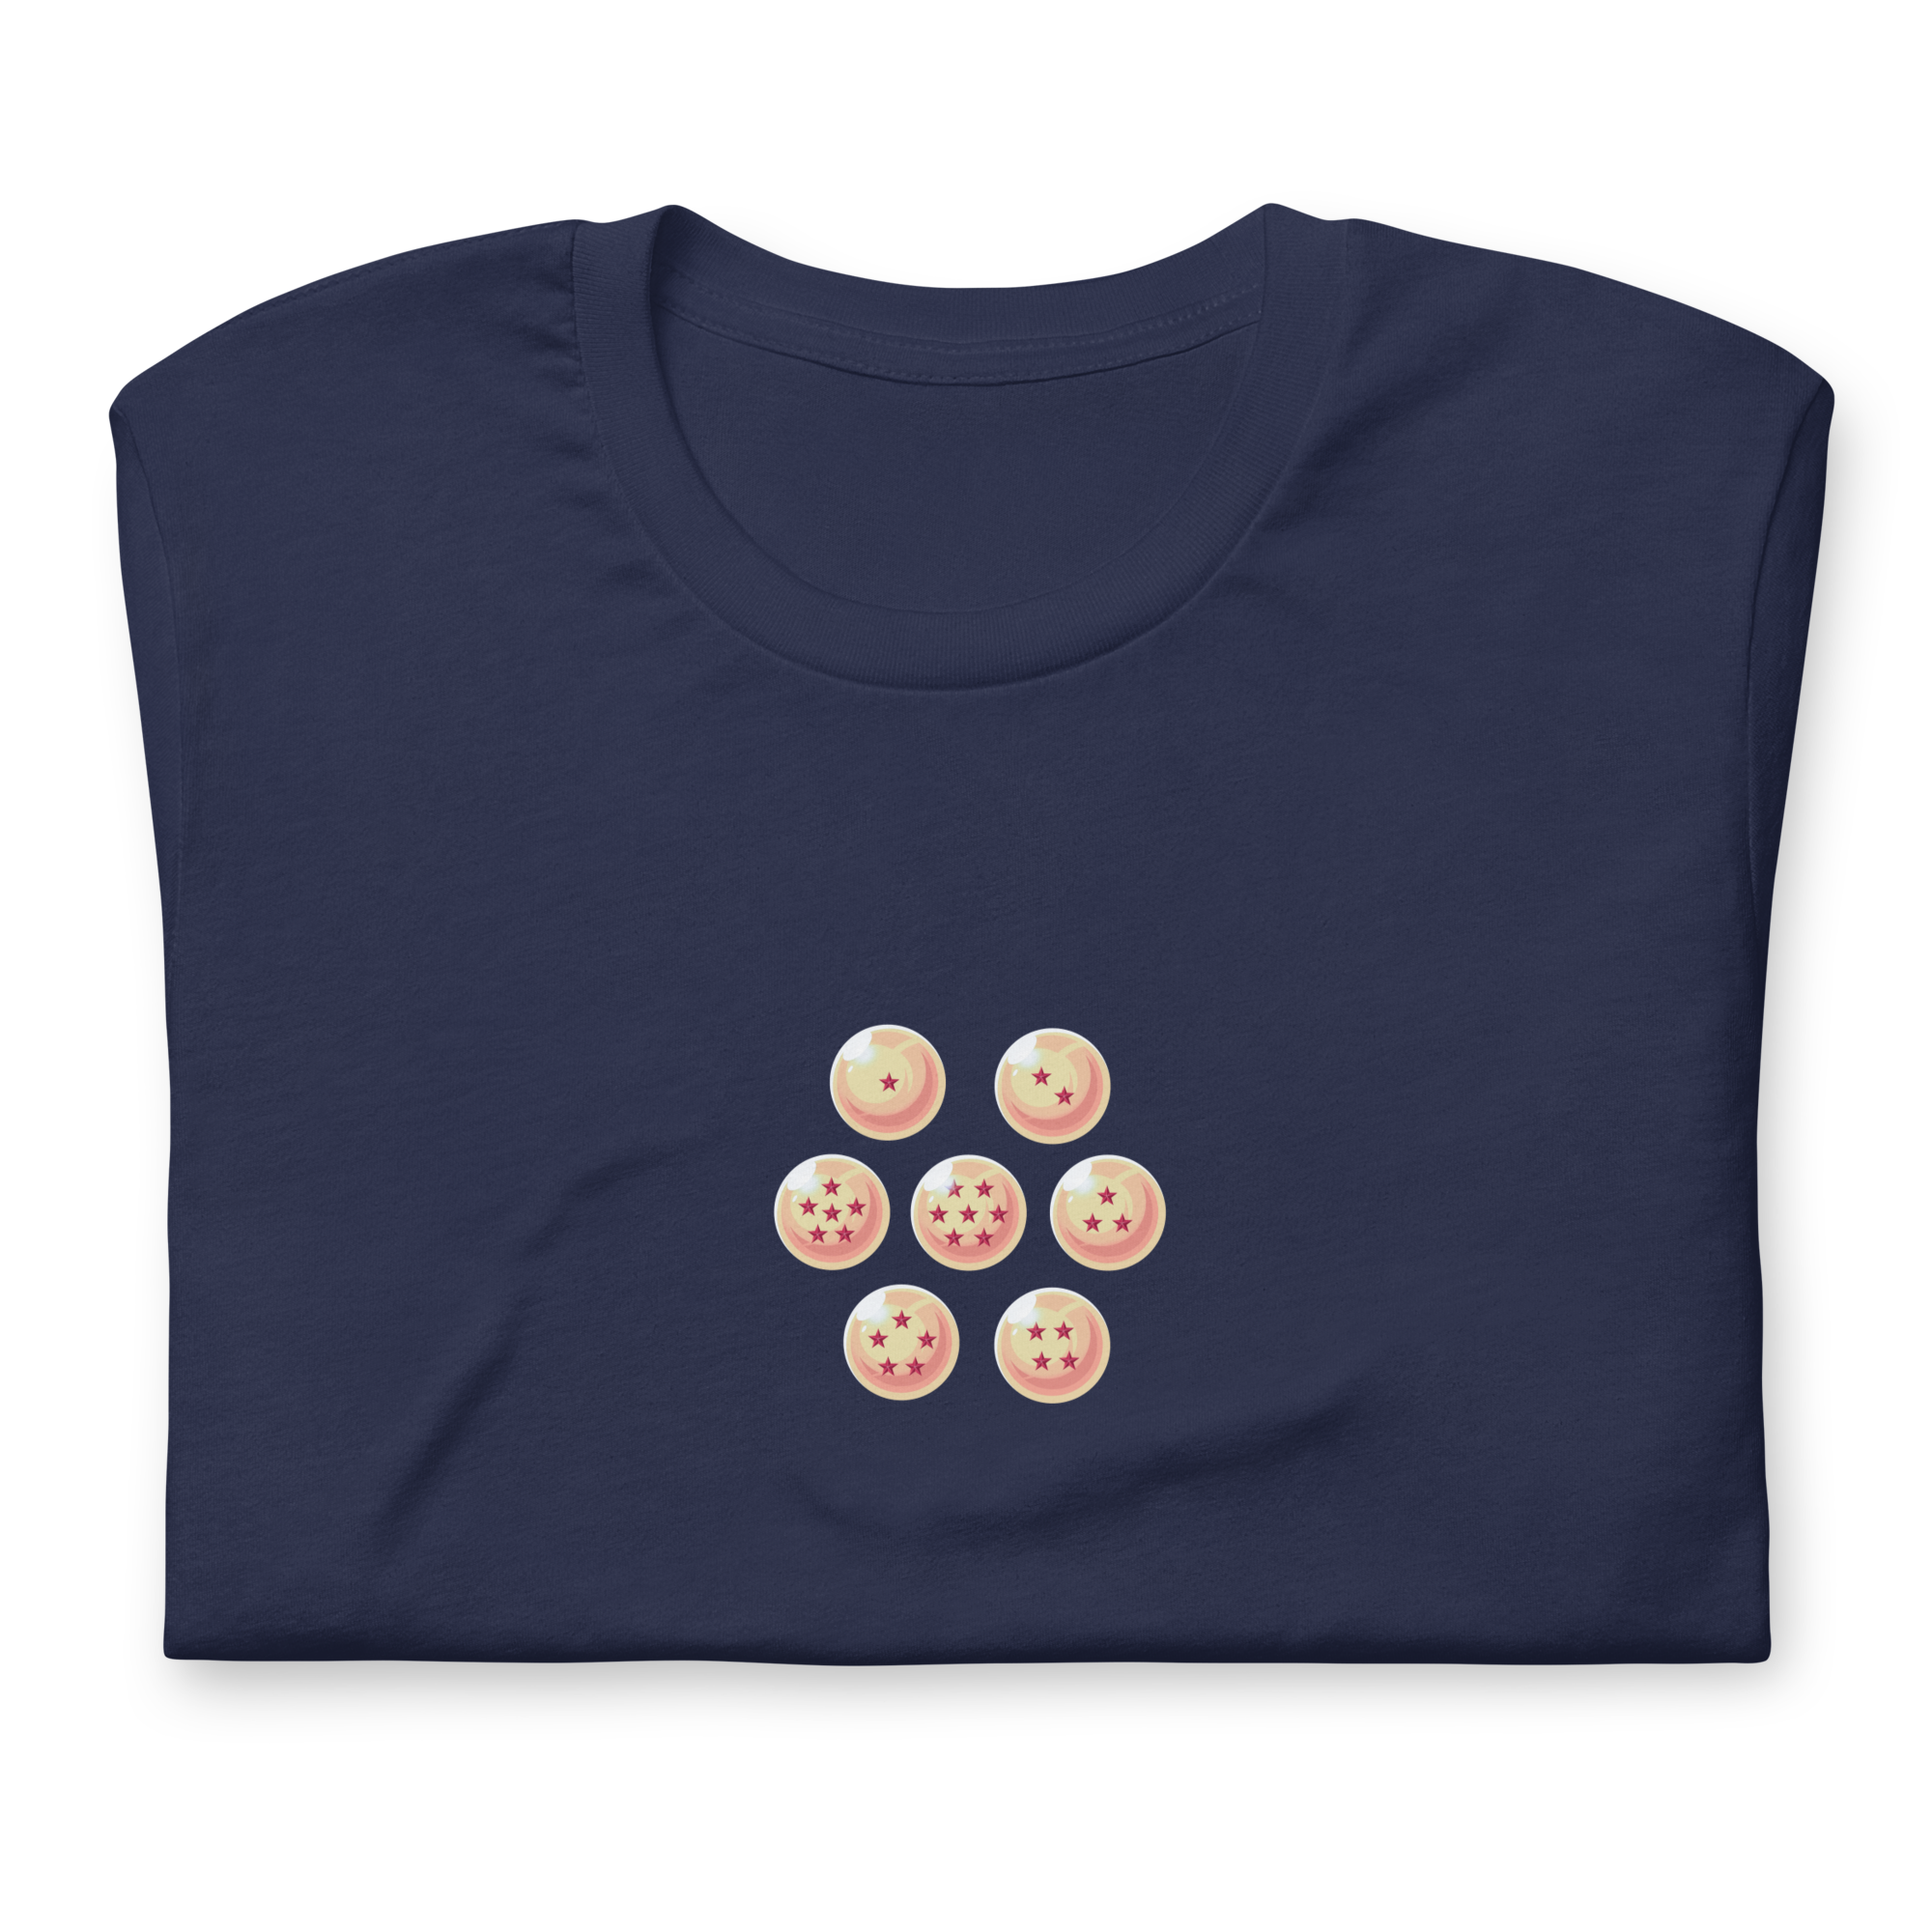 SAIYANS (ULTRA) - T-Shirt Back Print